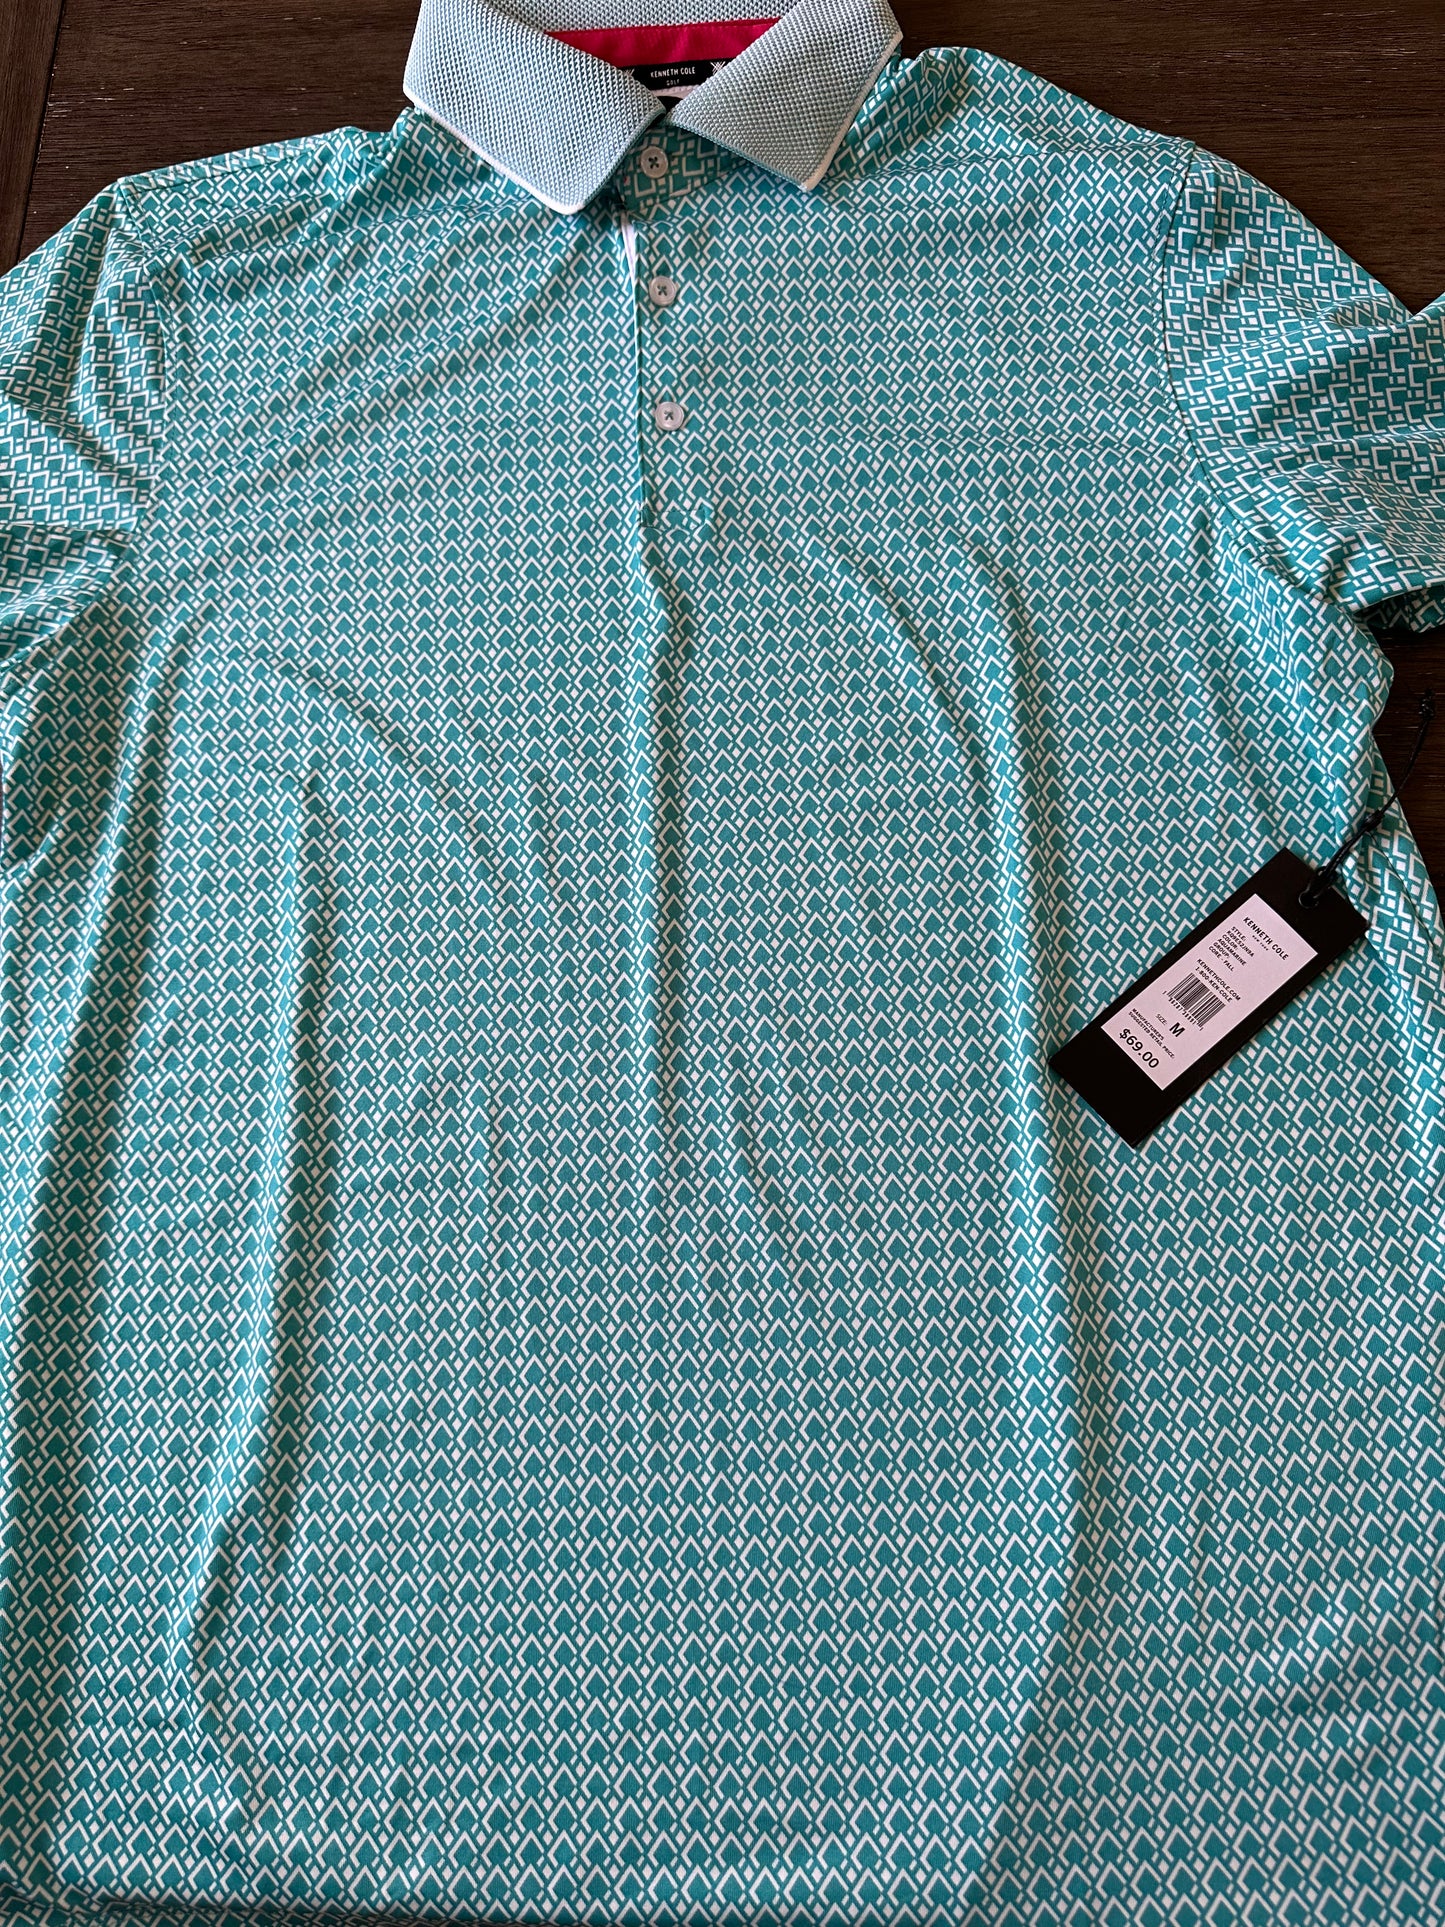 New- Men’s KC Golf Shirt XL